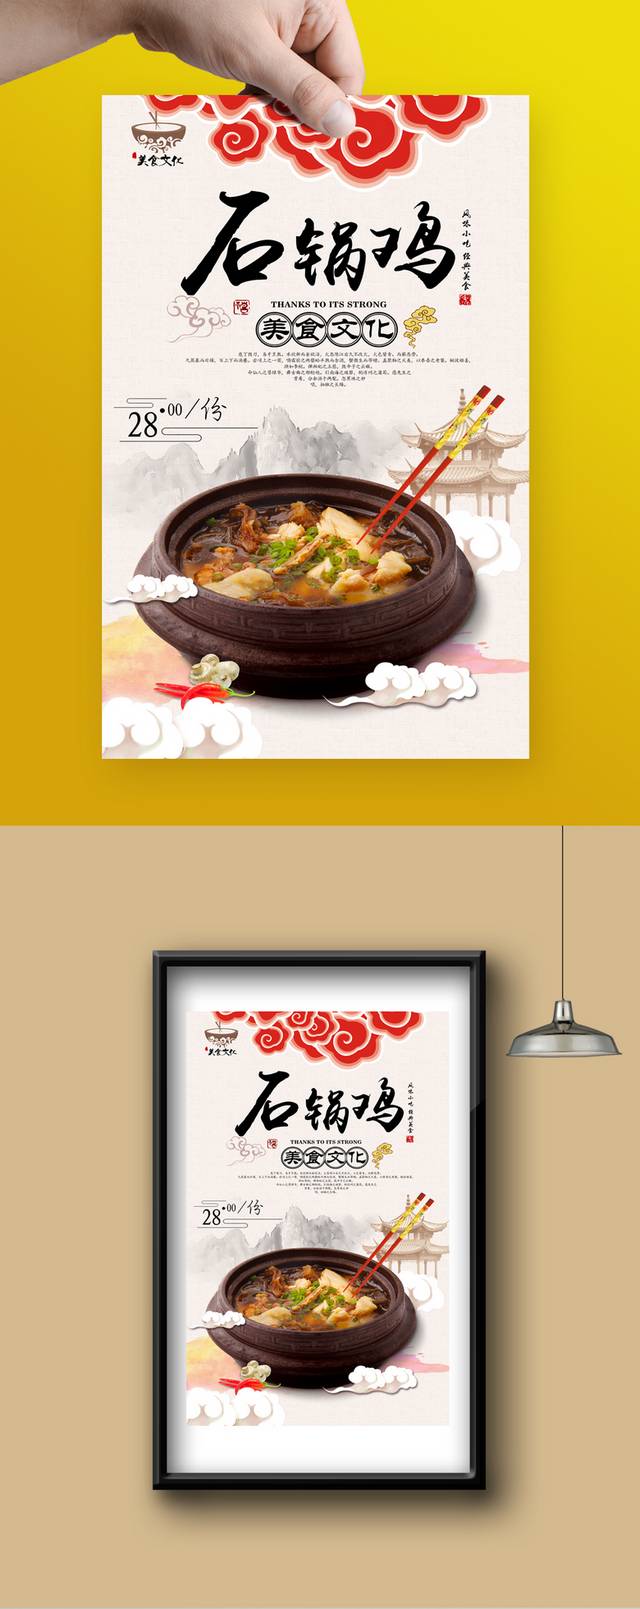 中国风高档石锅鸡宣传海报设计